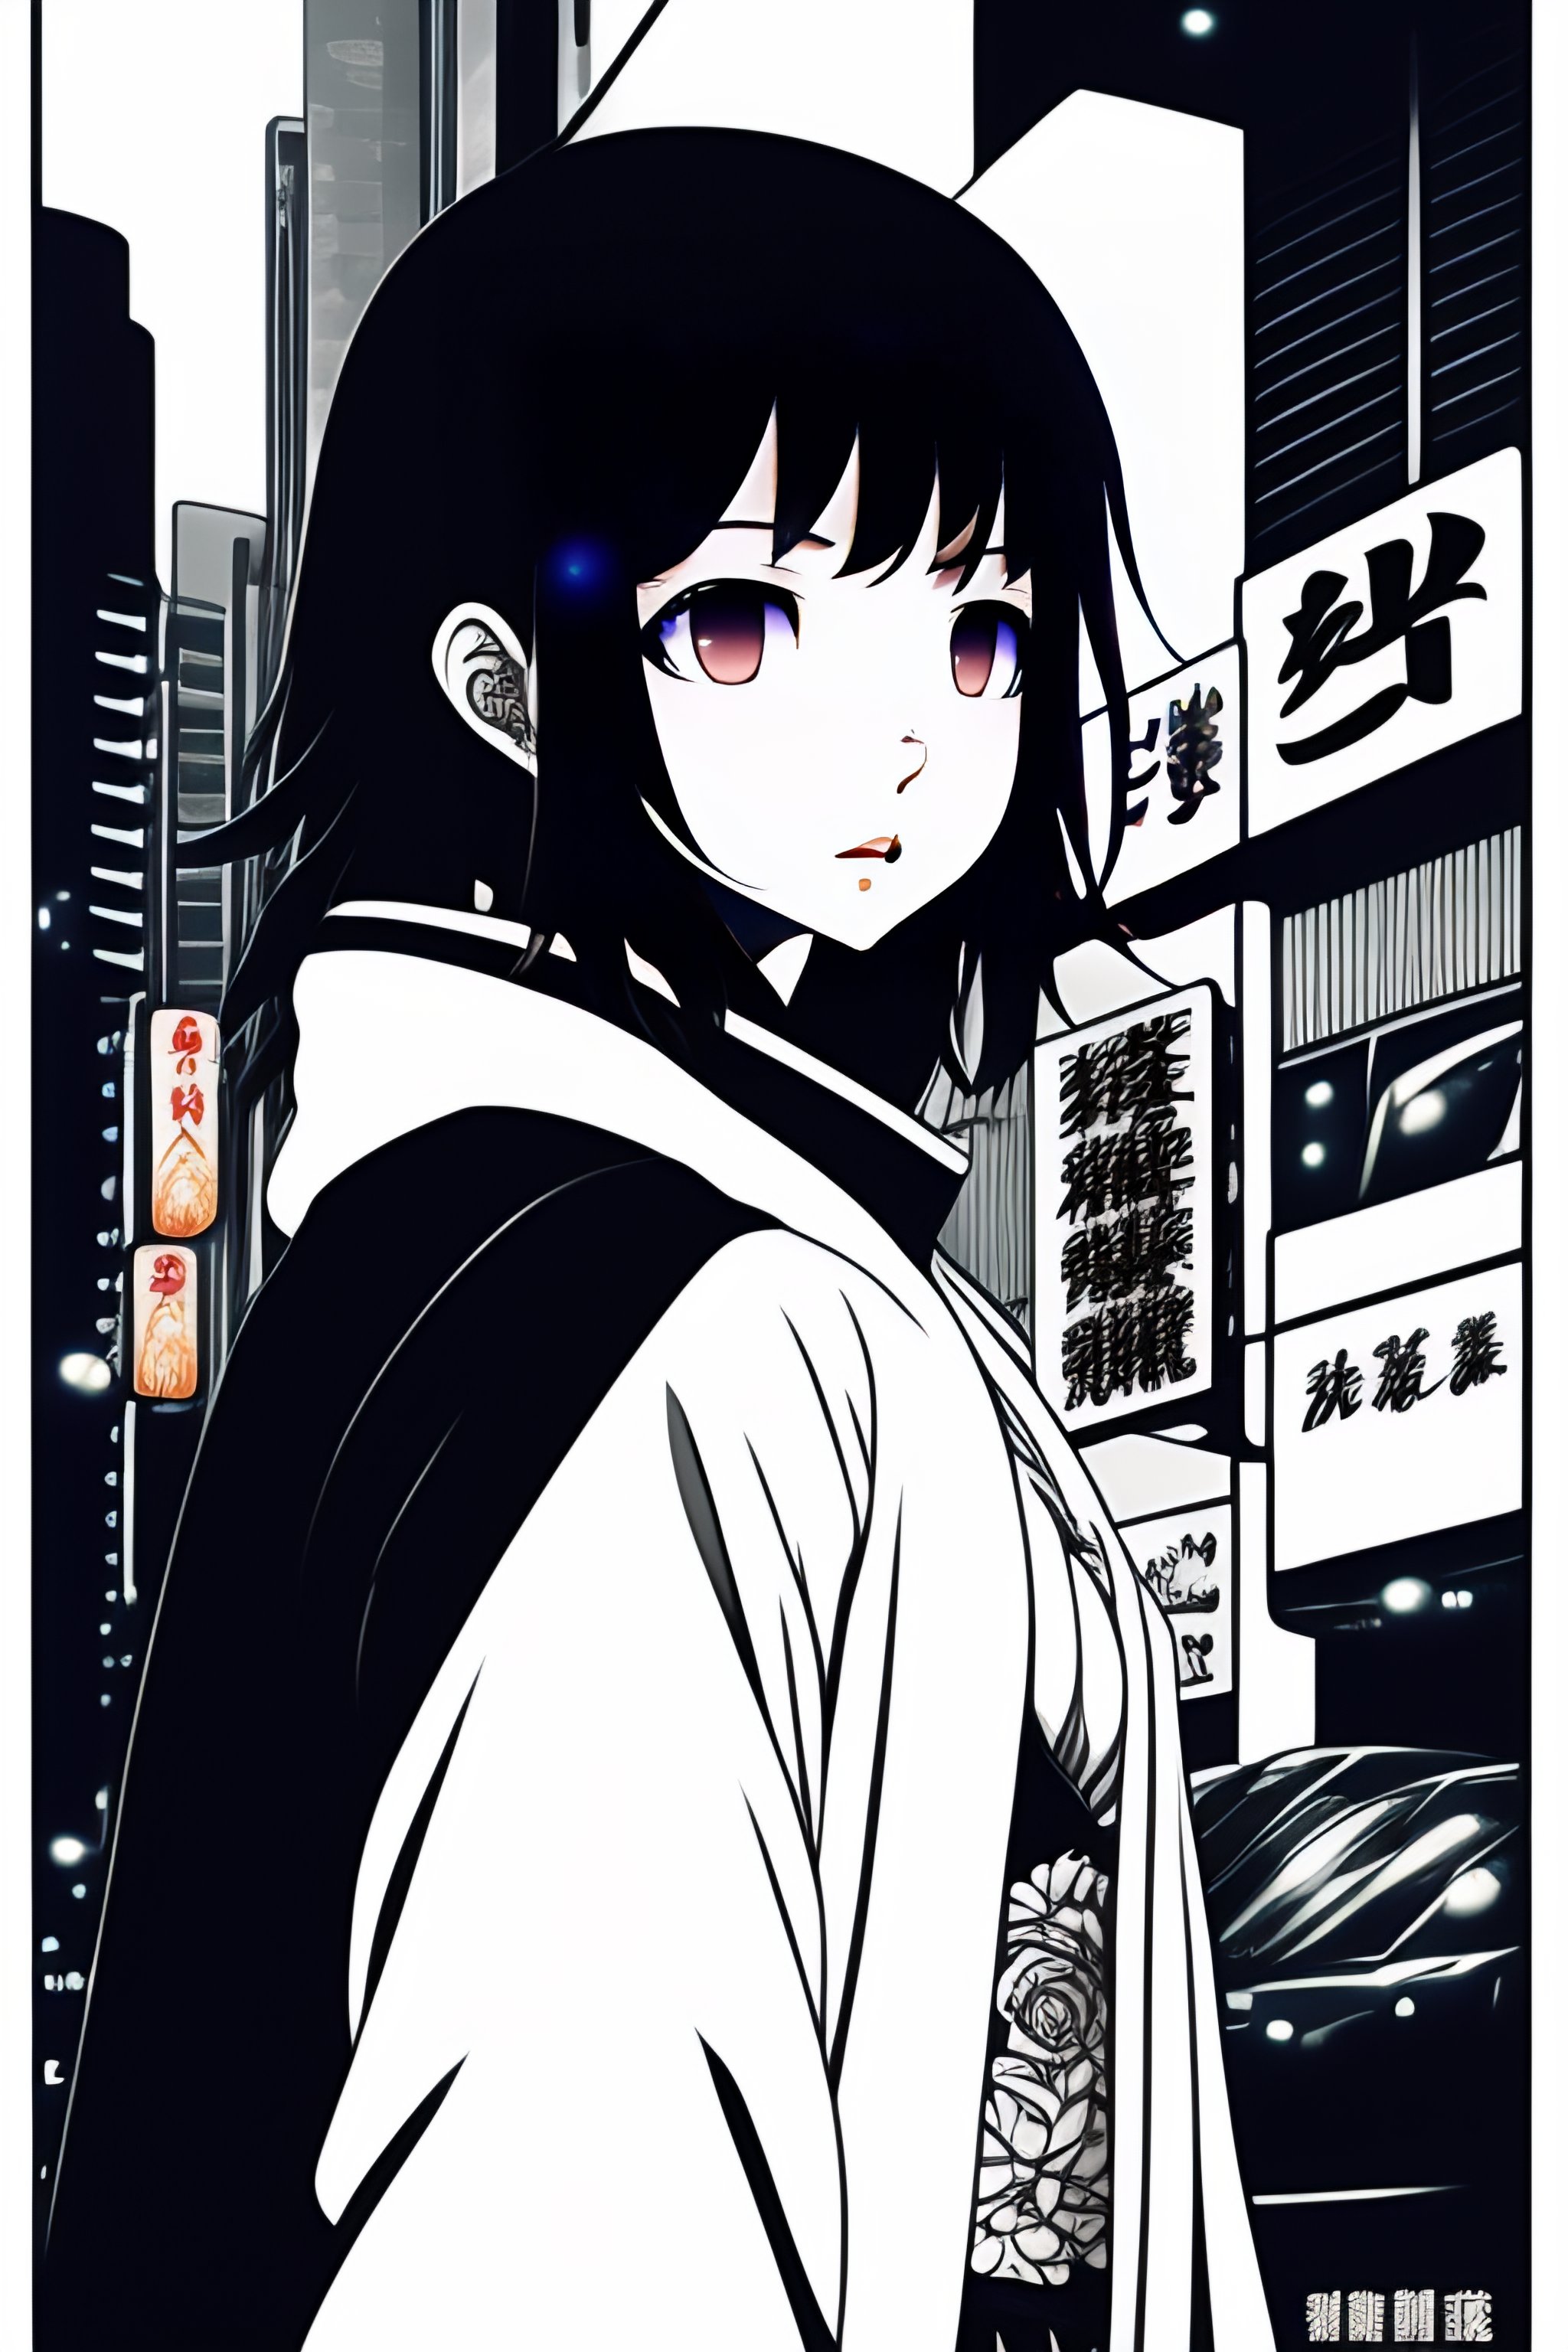 Ashito Aoi - Ao Ashi anime | Poster